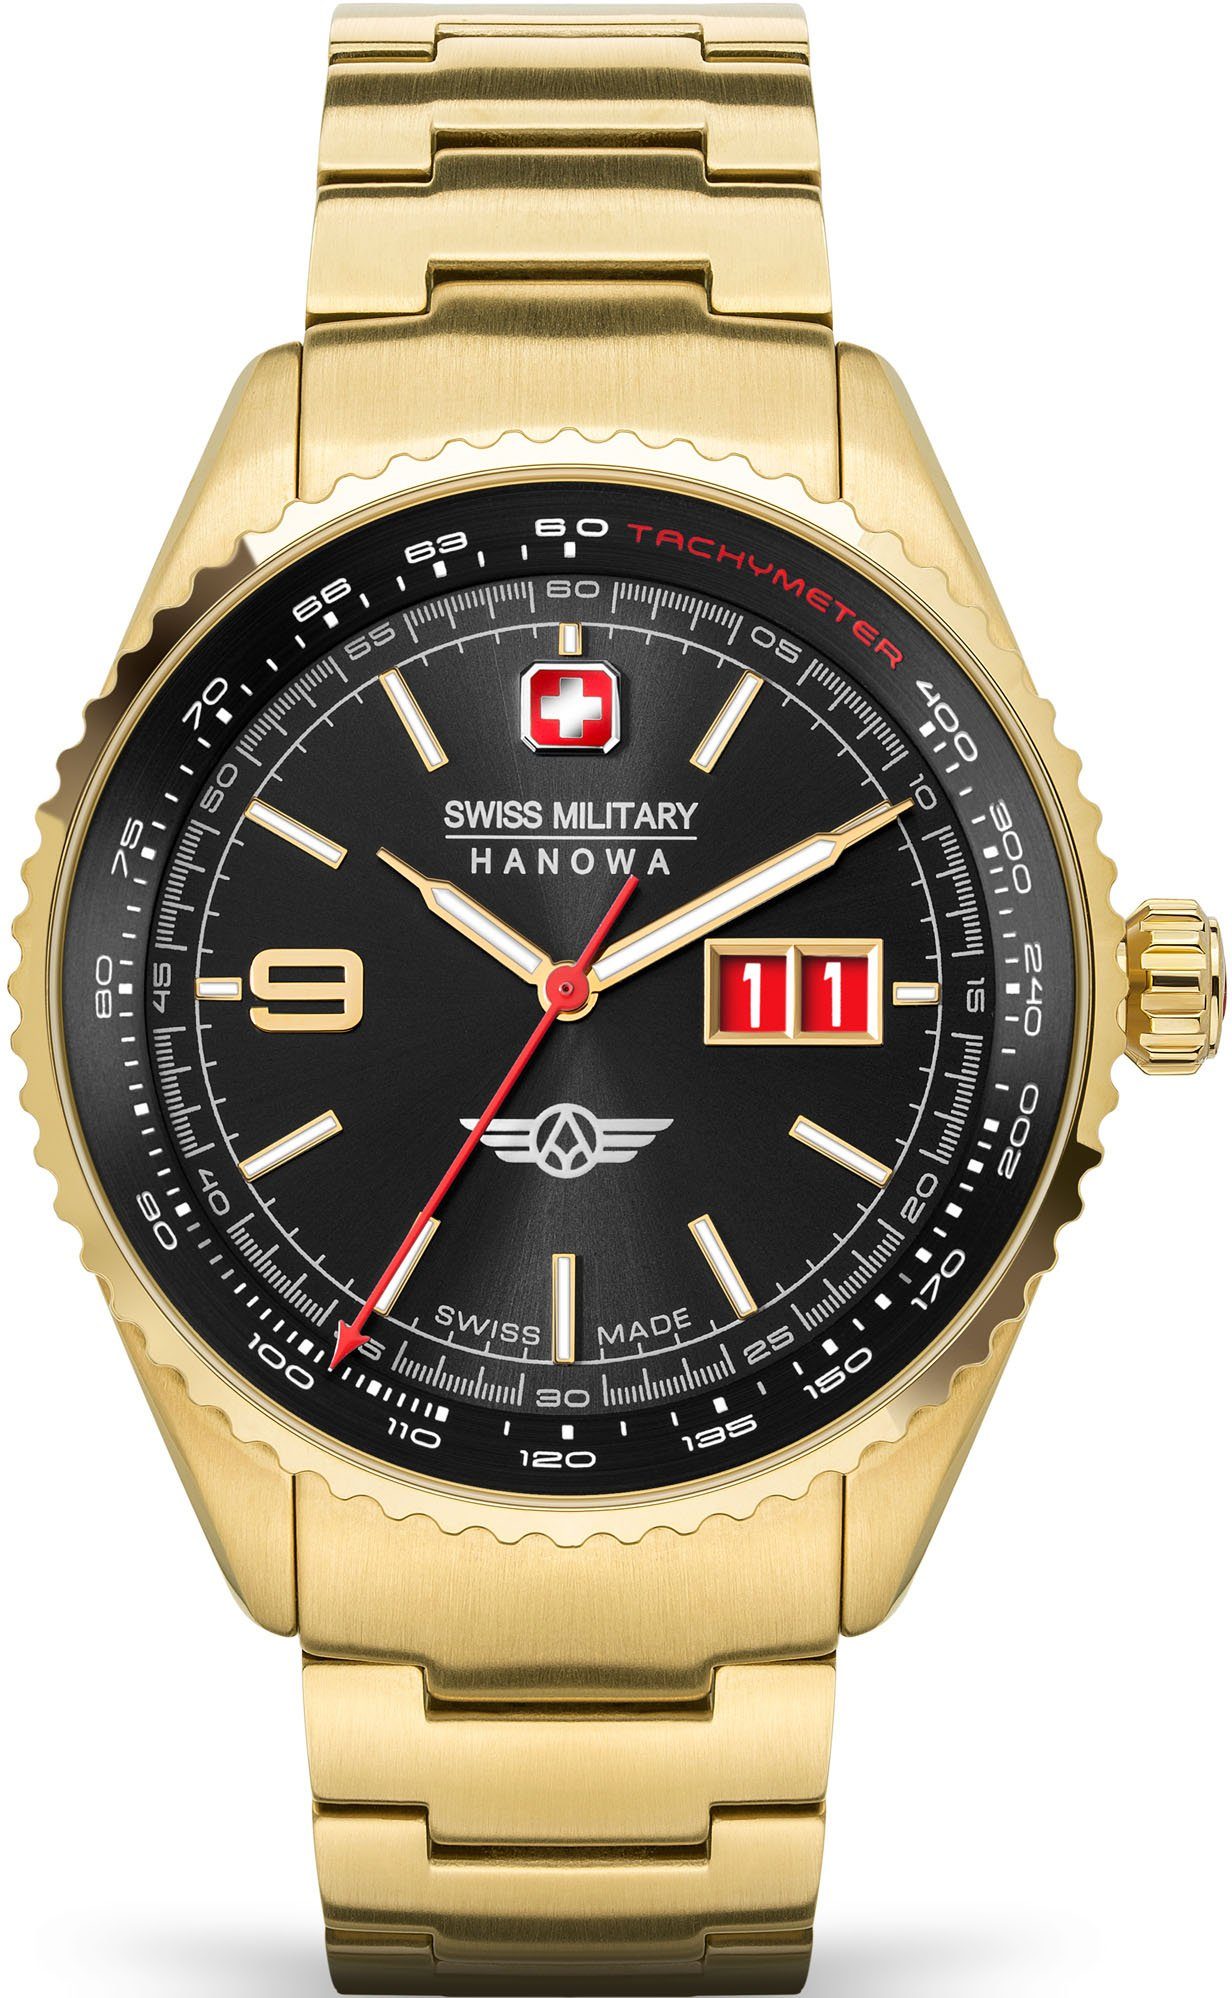 Swiss Military Hanowa Schweizer Uhr AFTERBURN, SMWGH2101010 gold, schwarz | Quarzuhren